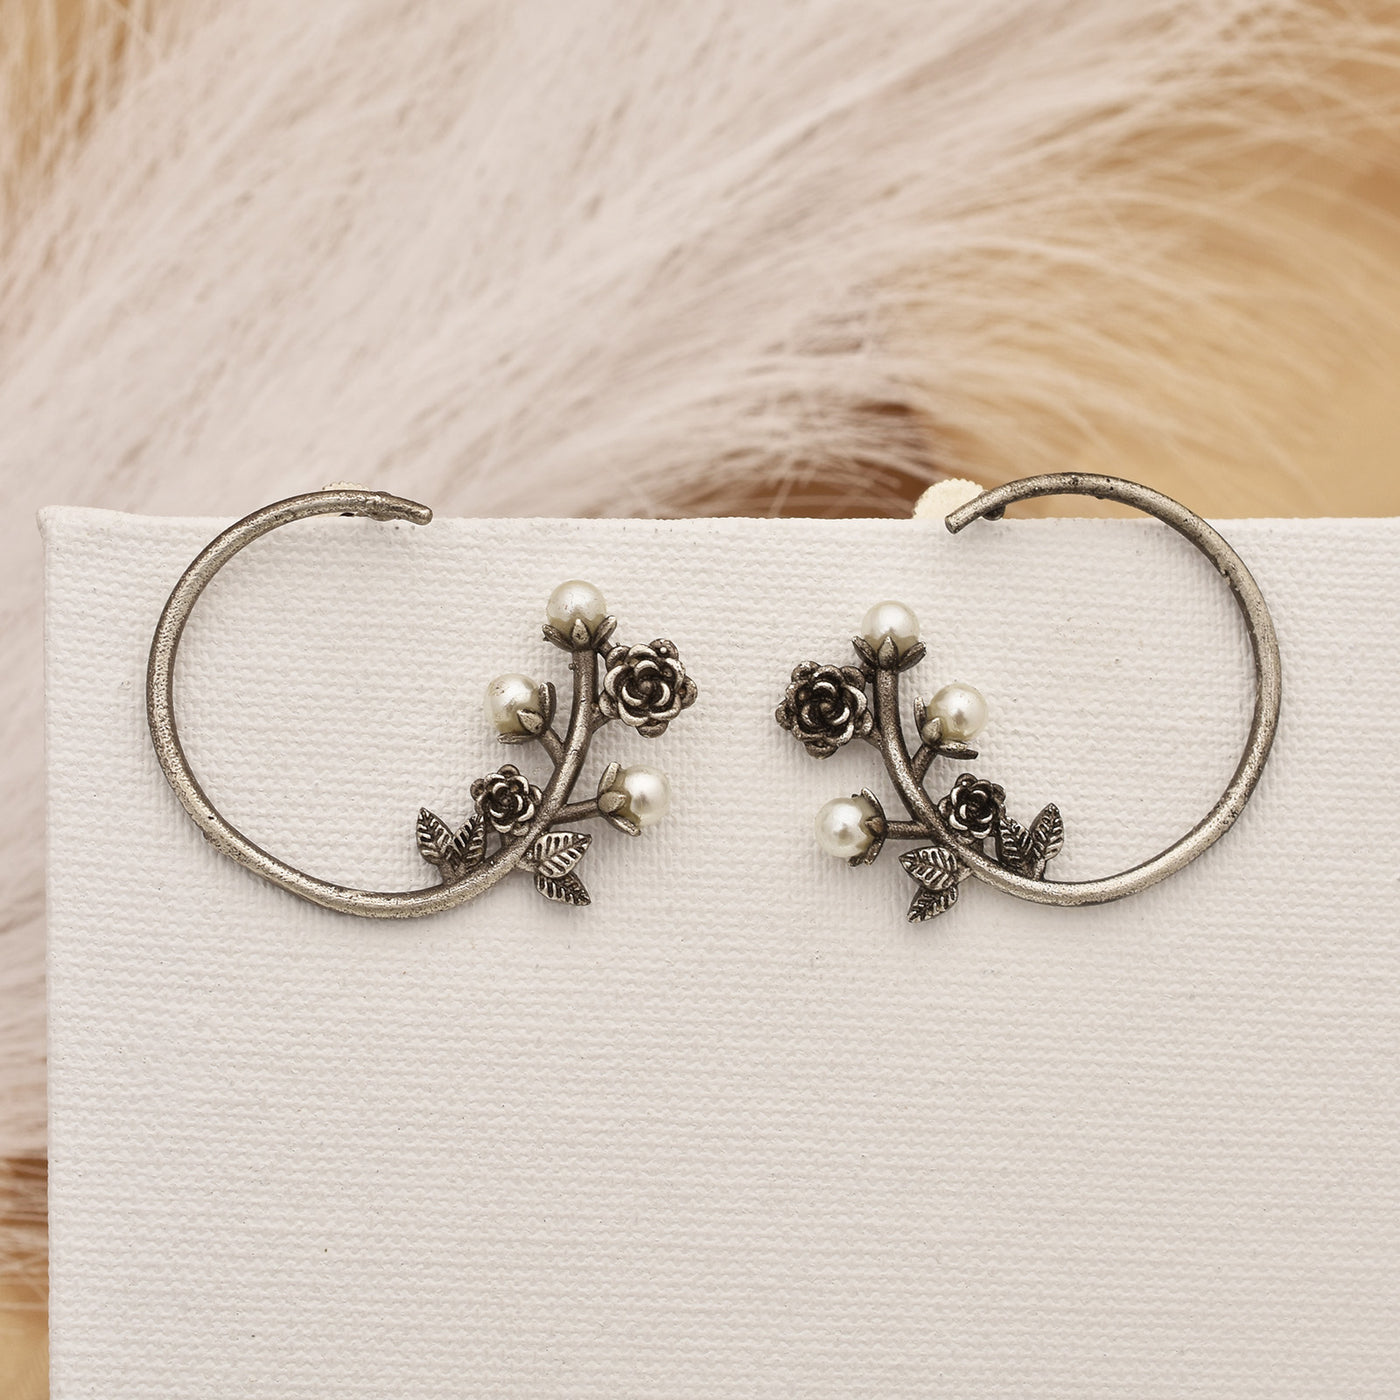 Pansy Flower Design Silver Look Alike Hoop Earrings